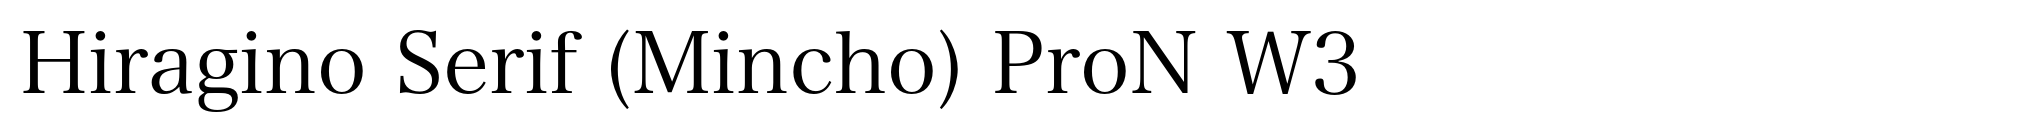 Hiragino Serif (Mincho) ProN W3 image